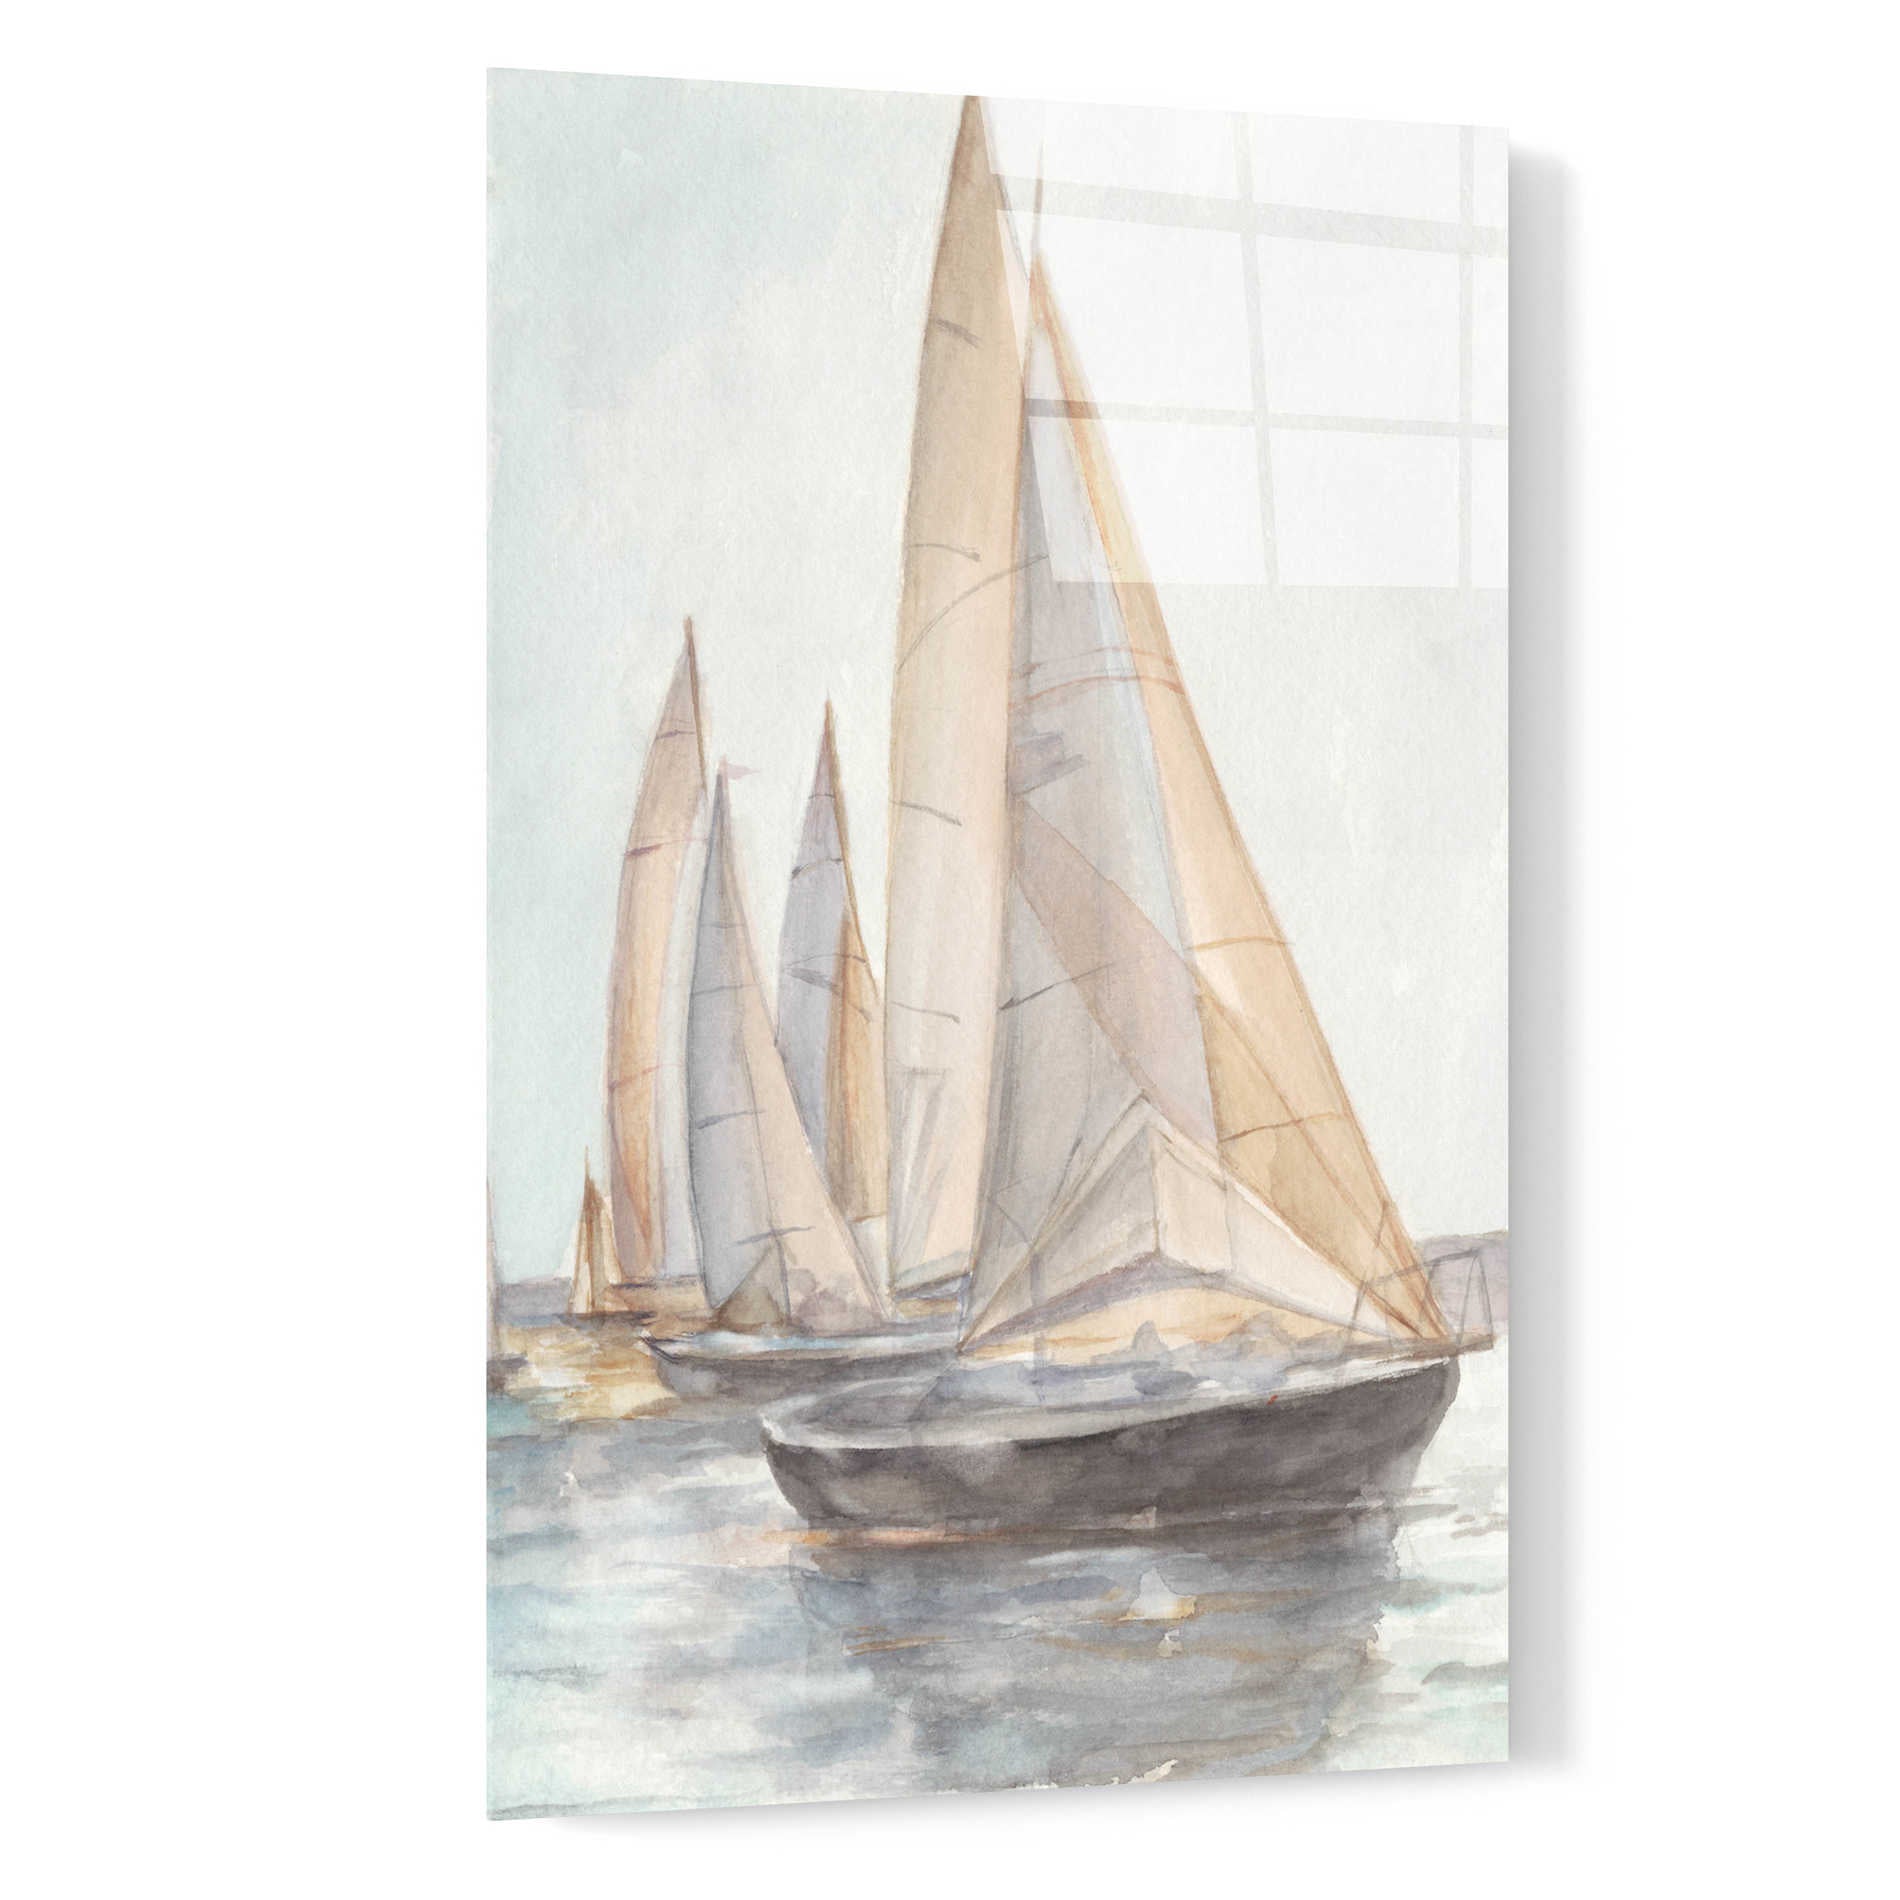 Epic Art 'Plein Air Sailboats II' by Ethan Harper, Acrylic Glass Wall Art,16x24